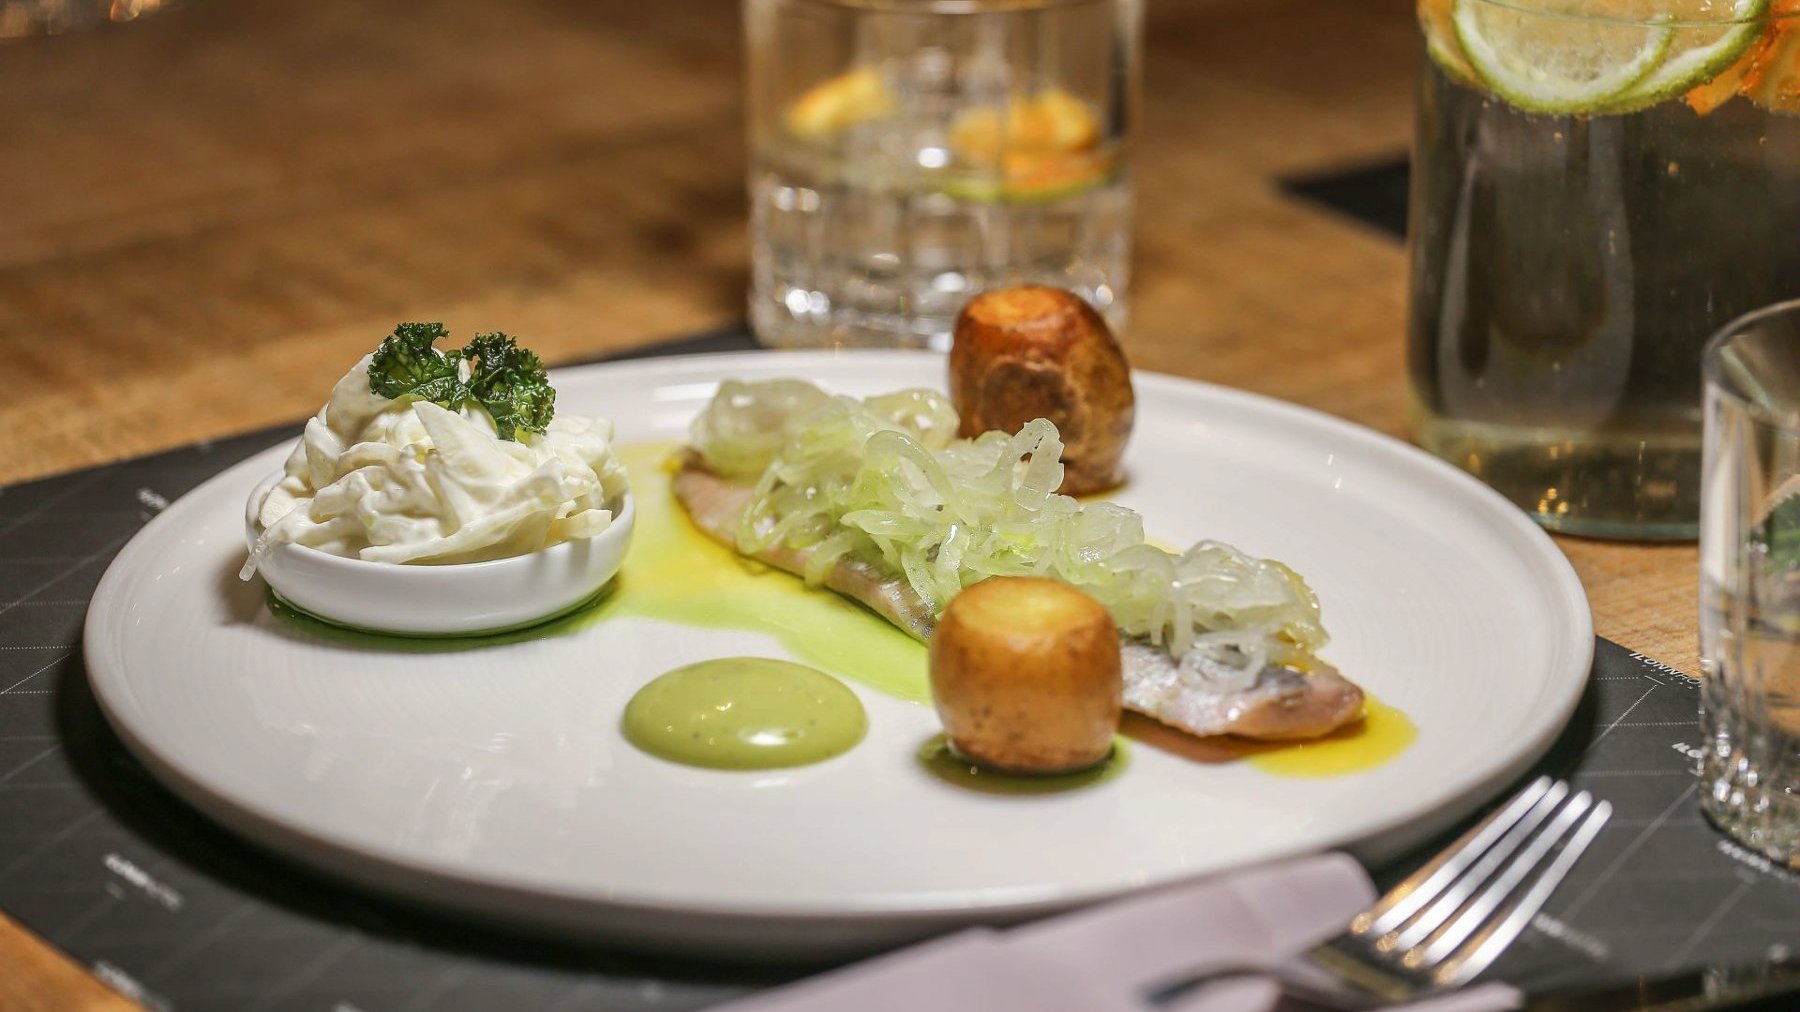 Na zdjęciu danie: kawałki ziemniaka, ryba i pojemnik z sosem, wszystko na białym talerzu. W tle szklanki i sztućce